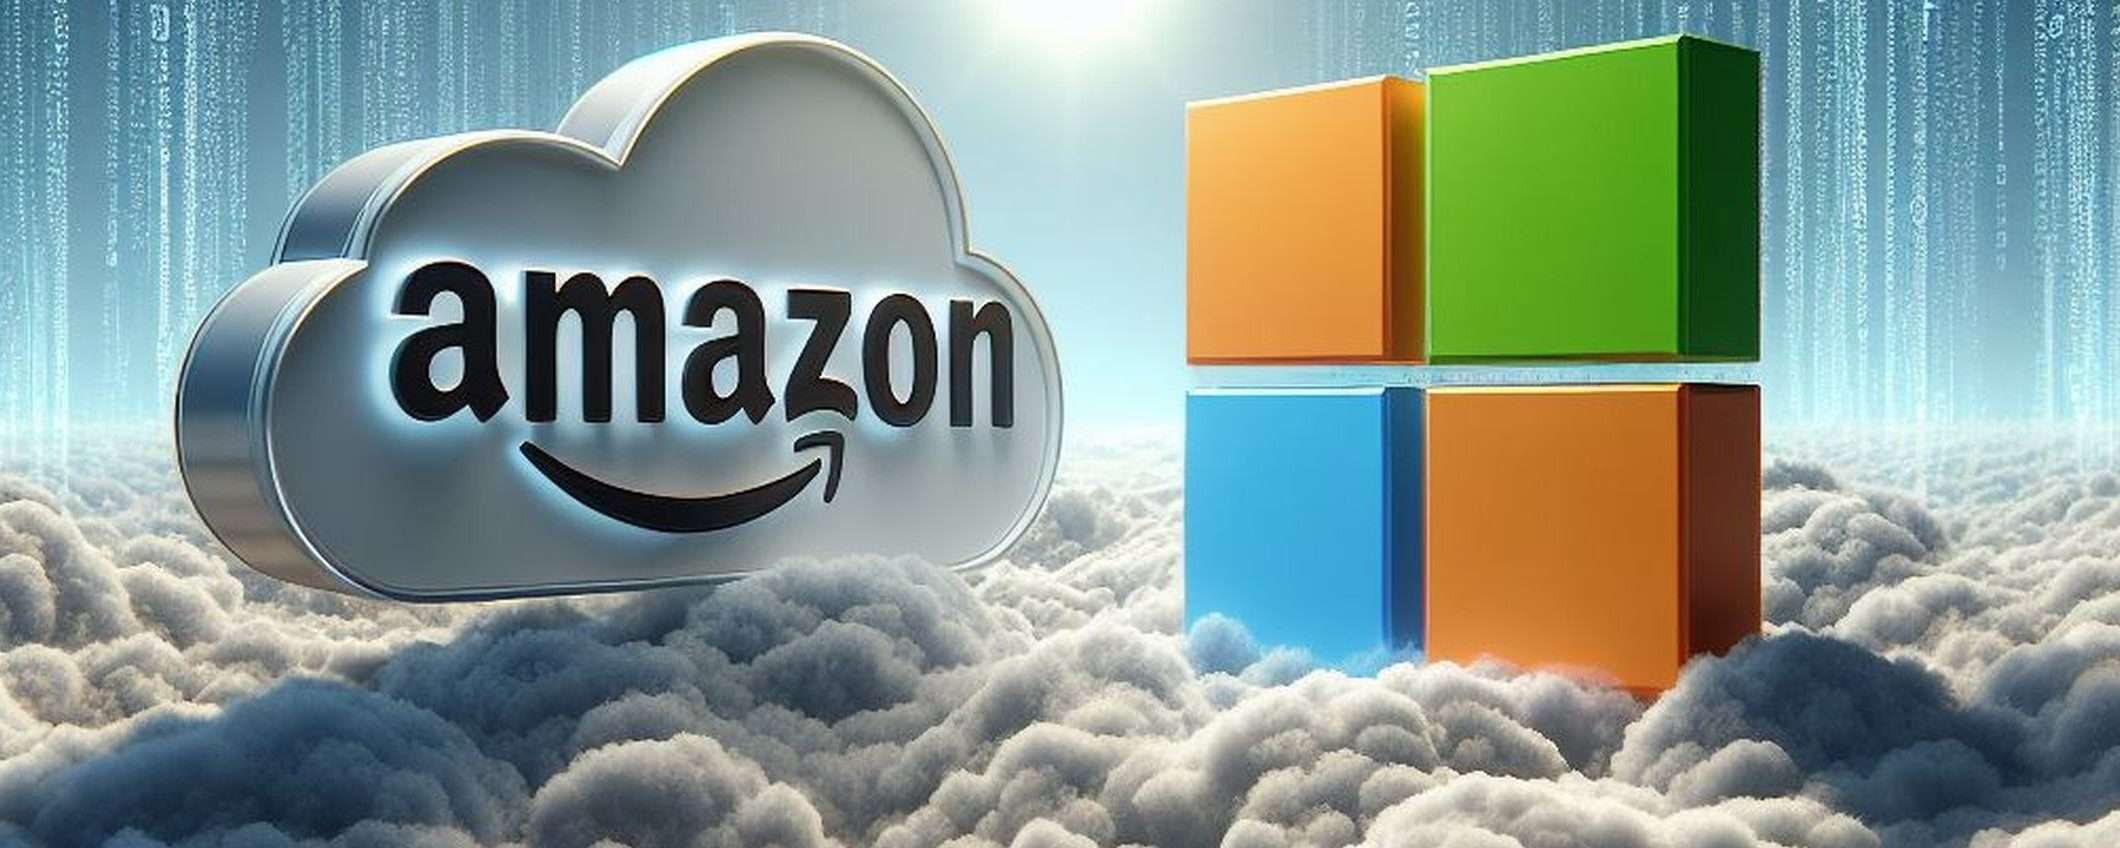 Mercato cloud in UK: anche Amazon contro Microsoft